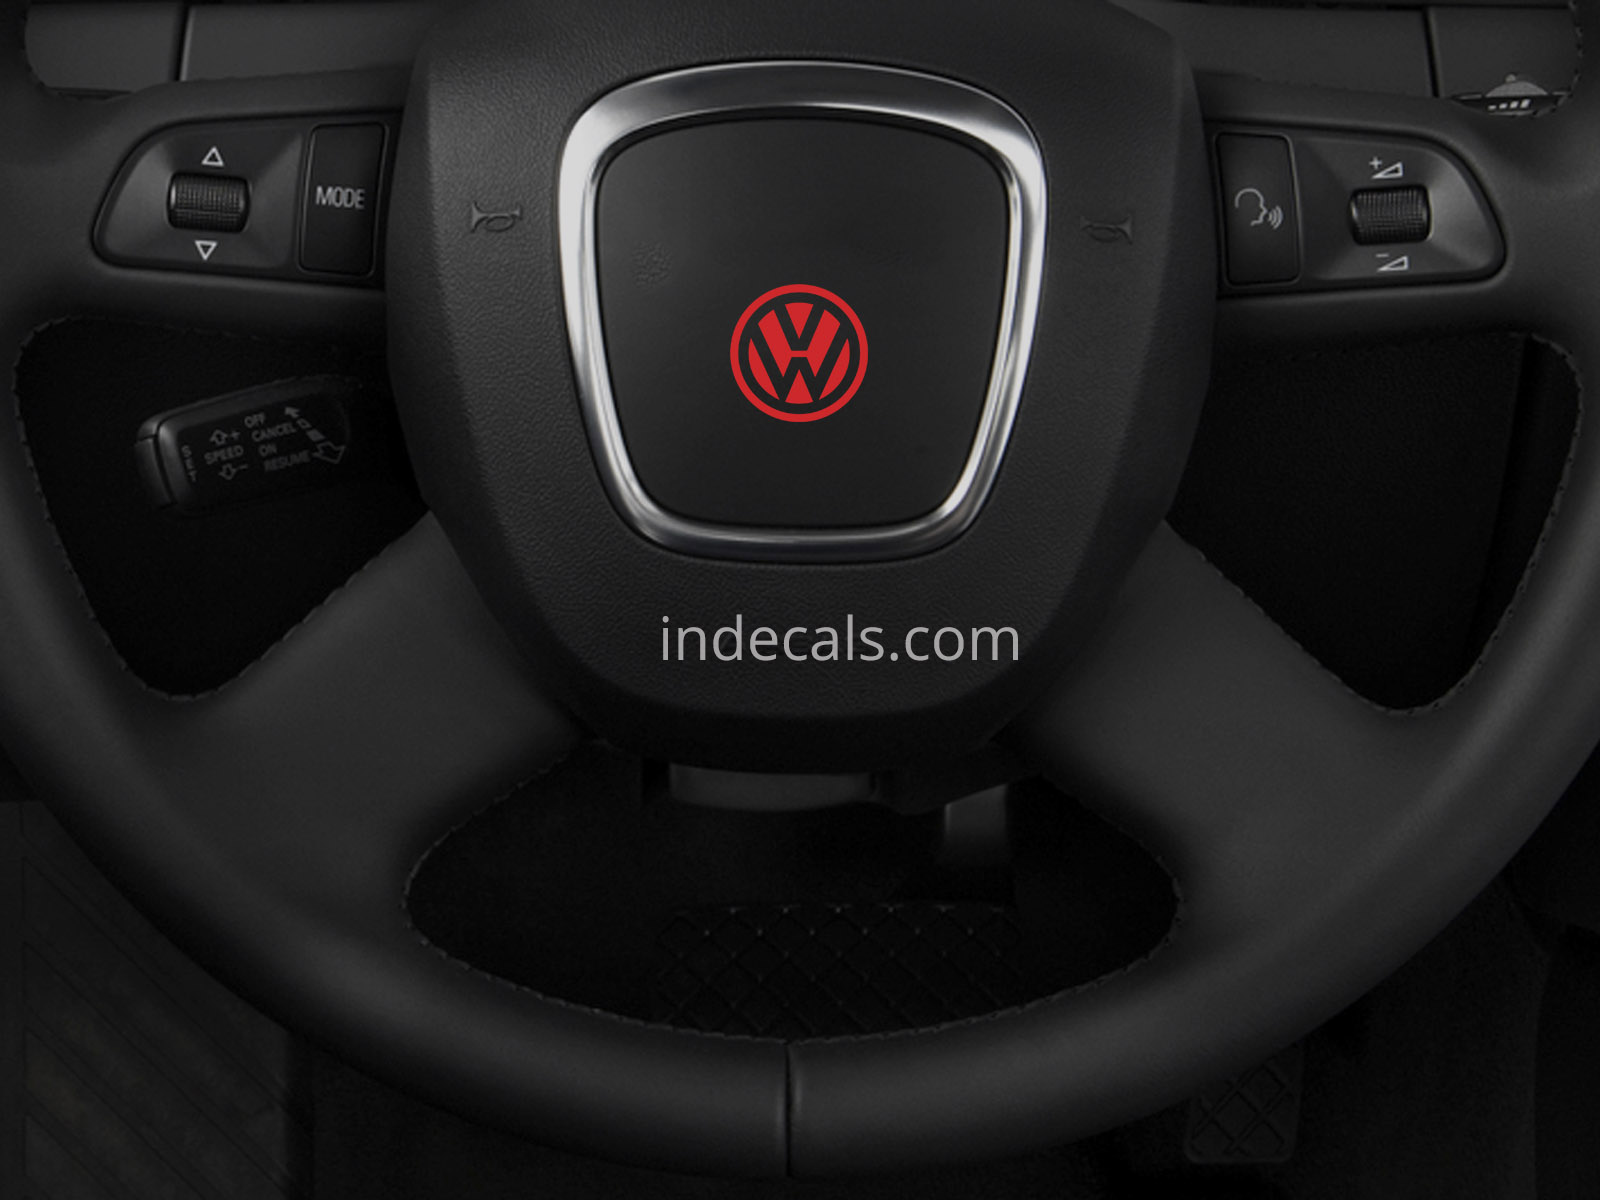 3 x Volkswagen Stickers for Steering Wheel - Red